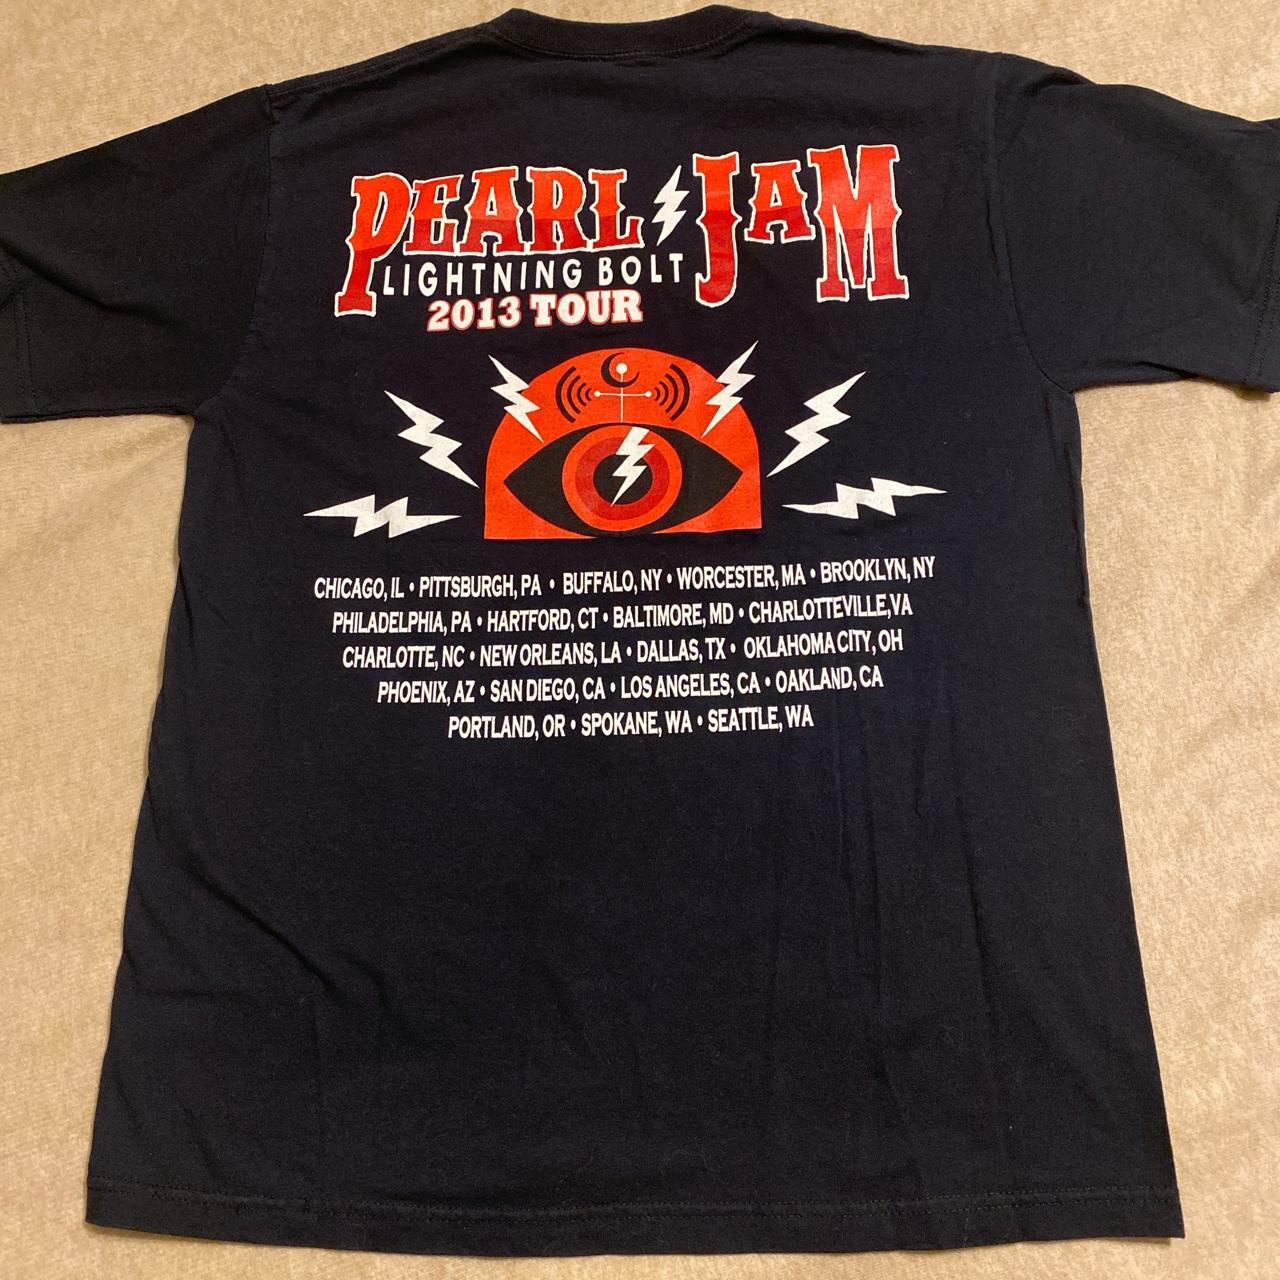 Pearl Jam 2013 concert lightning bolt tour shirt no... - Depop